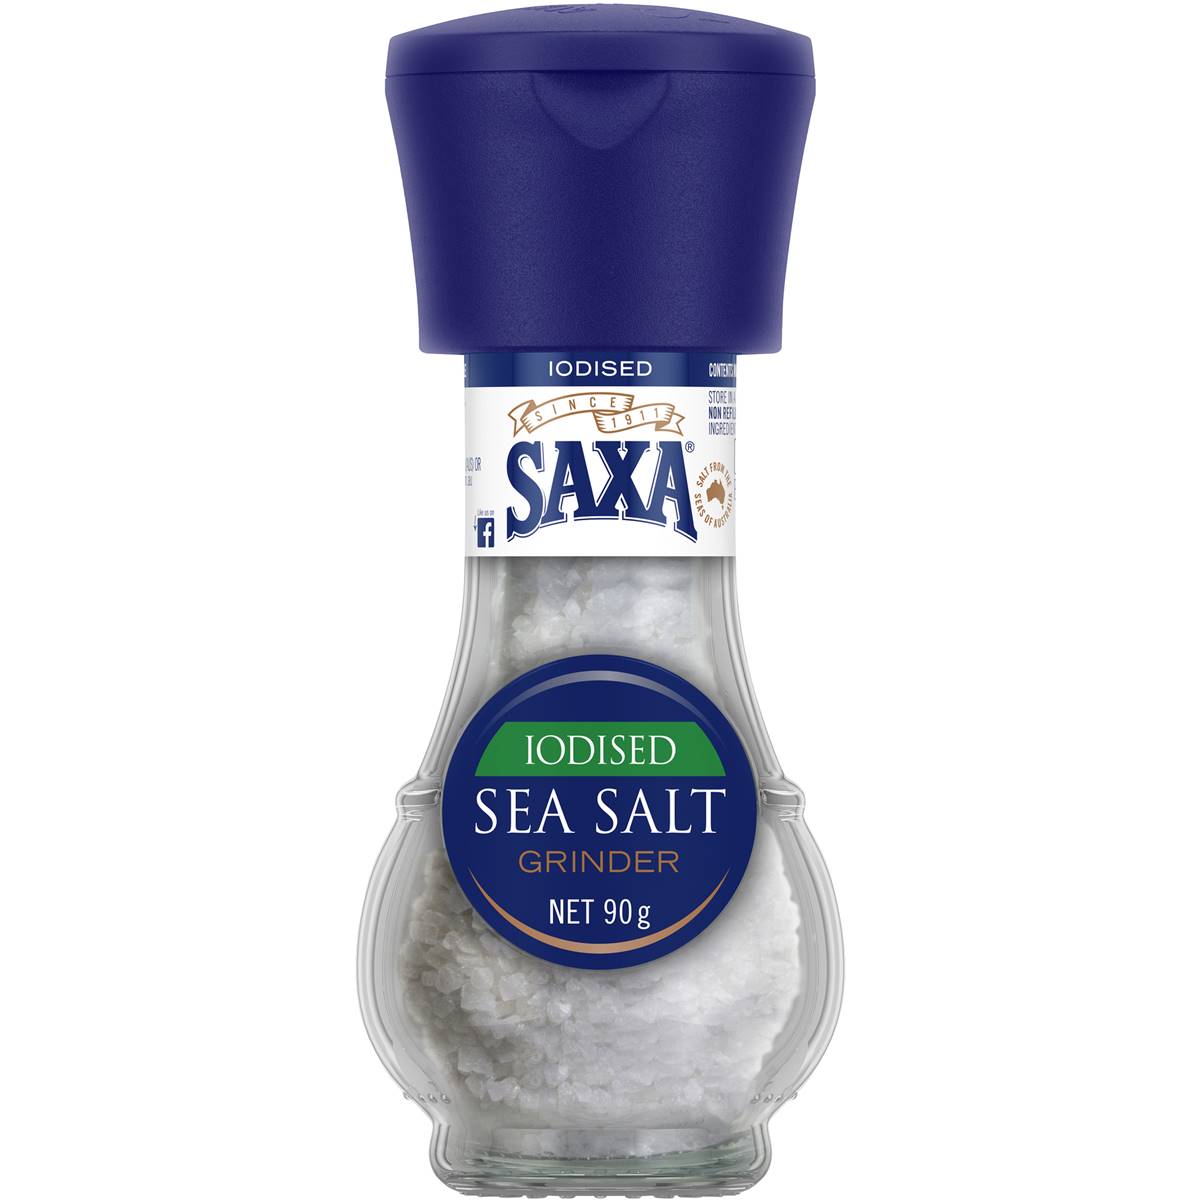 Saxa Grinder Iodised Sea Salt 90g